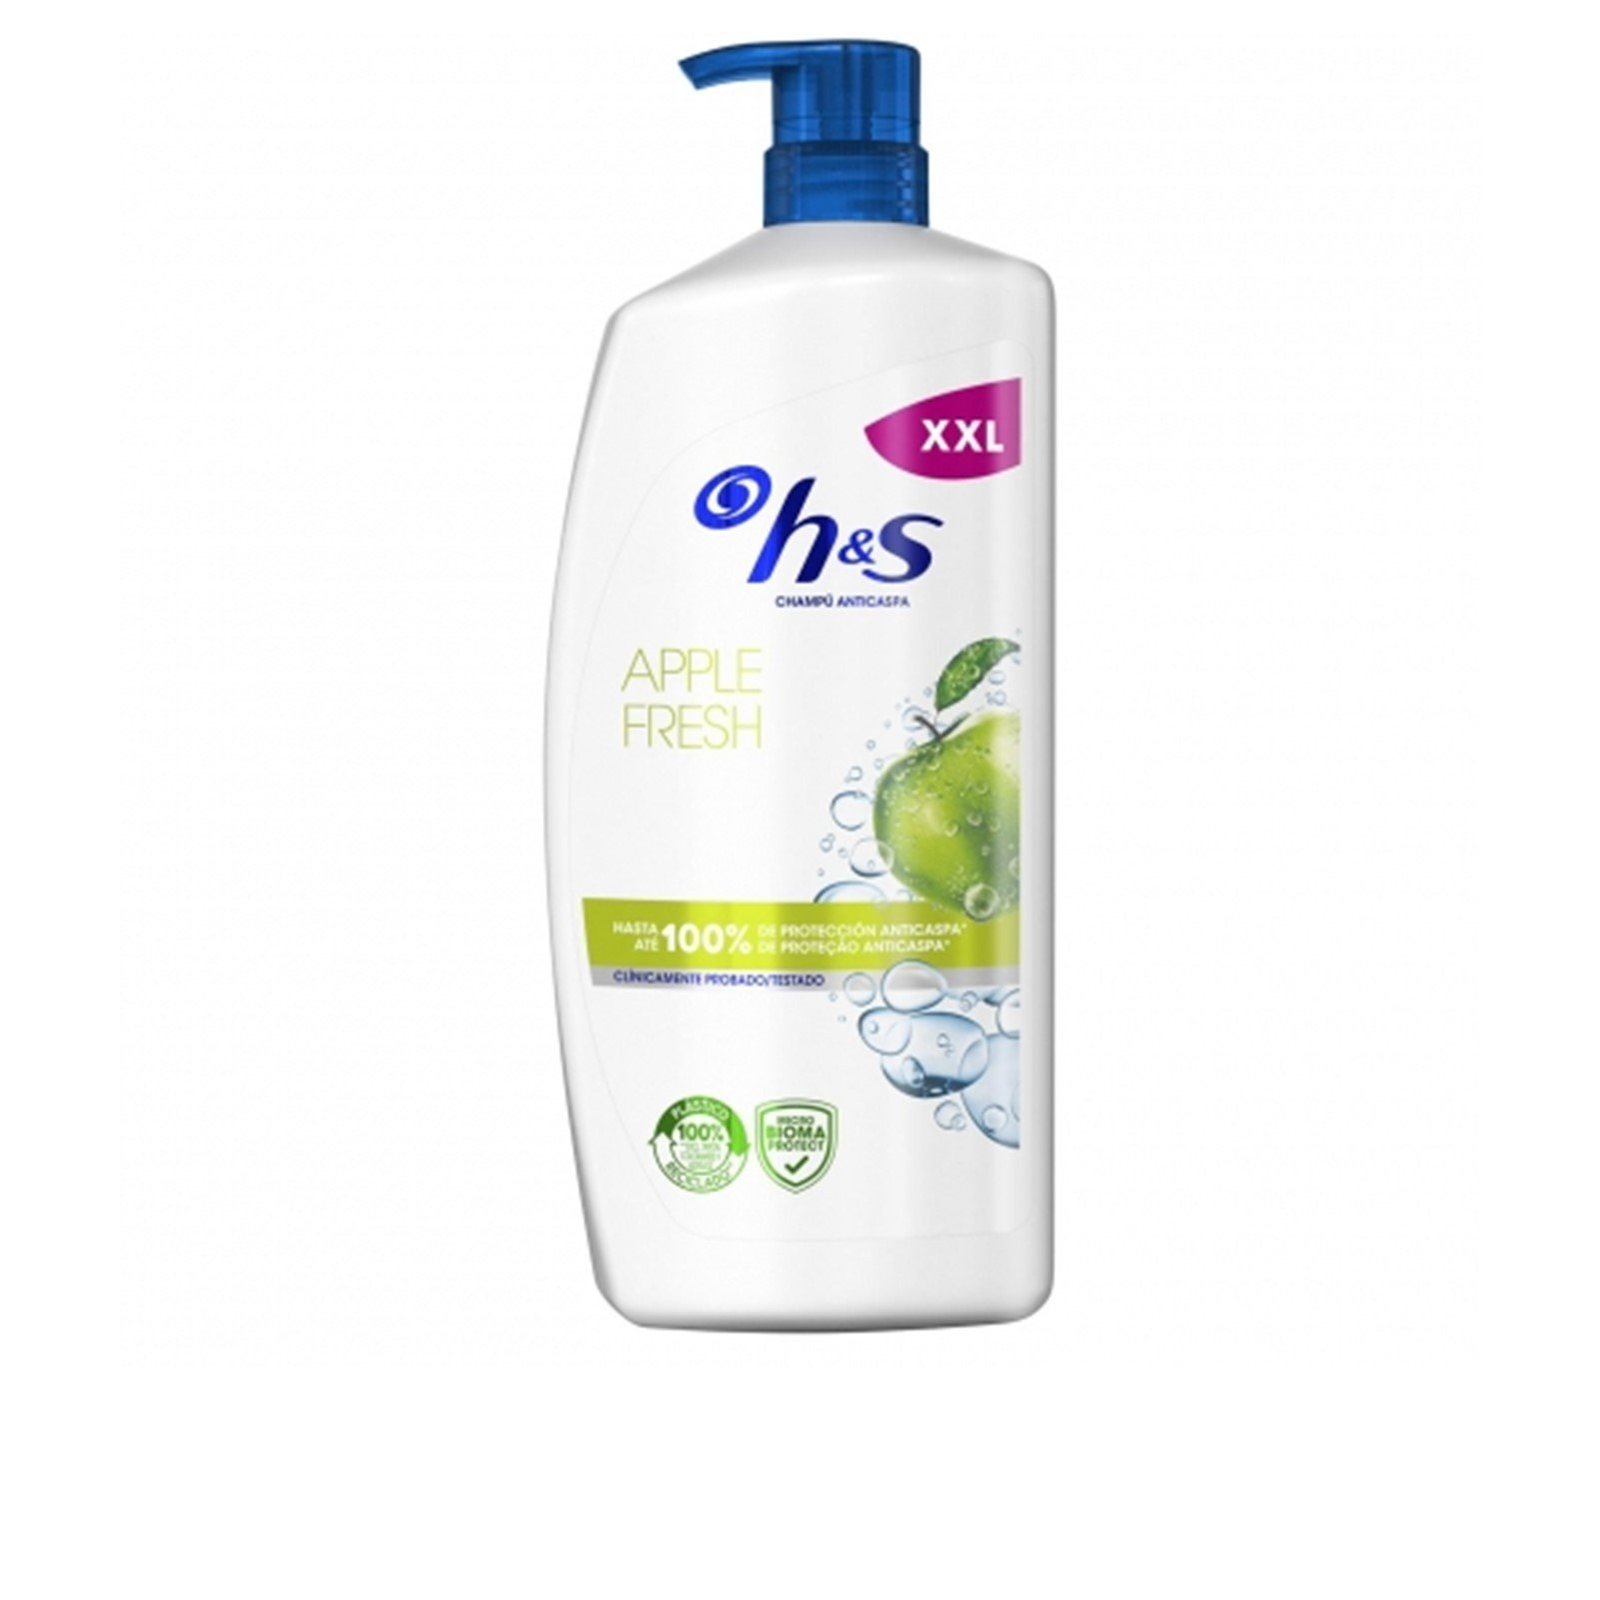 H&S Apple Fresh Shampoo 1L